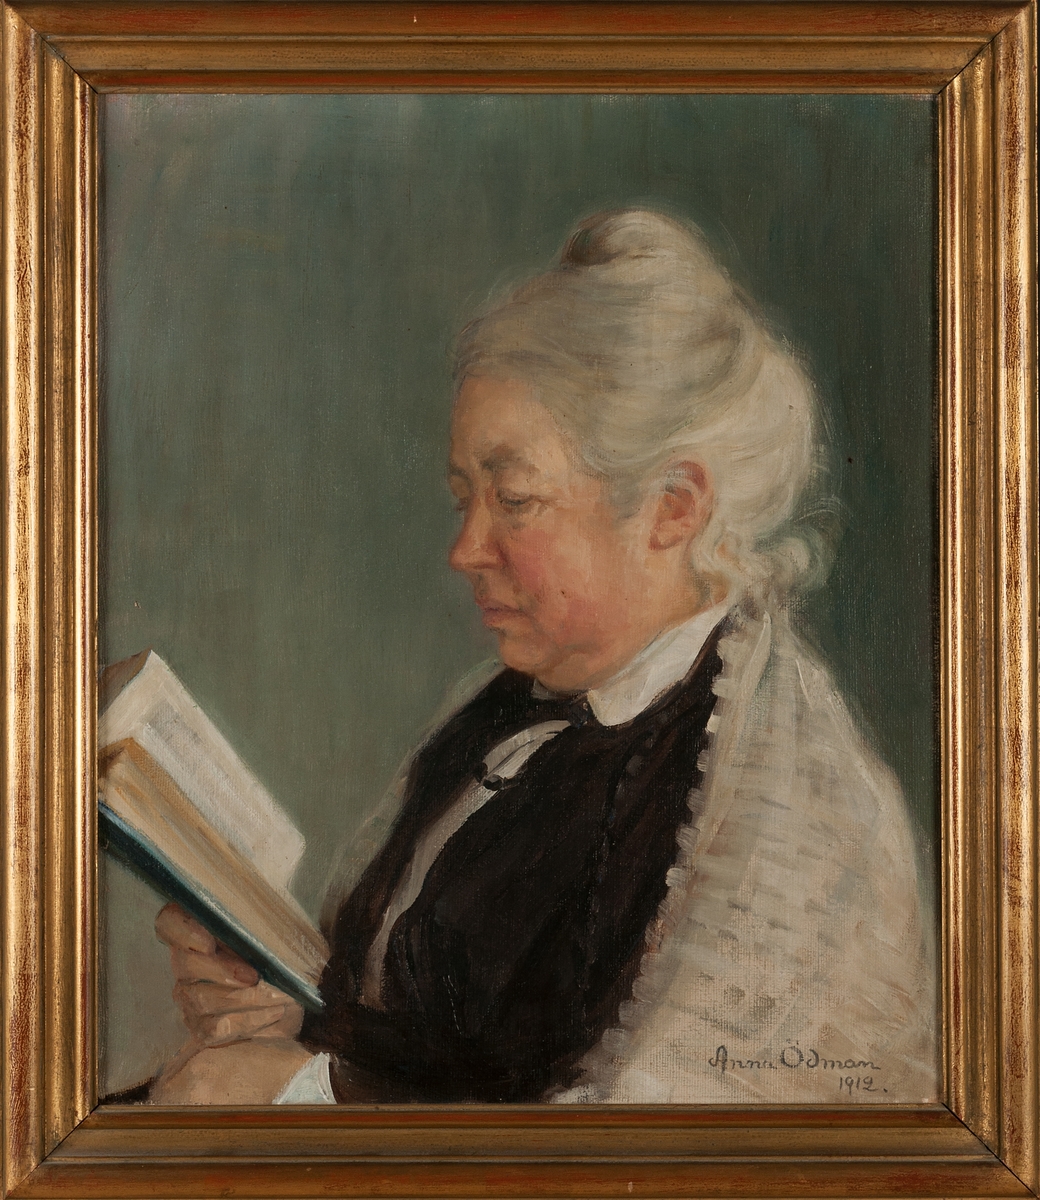 Målning, porträtt av Anna Ödman föreställande konstnärens mor Linnéa Ödman.
Förgylld träram.